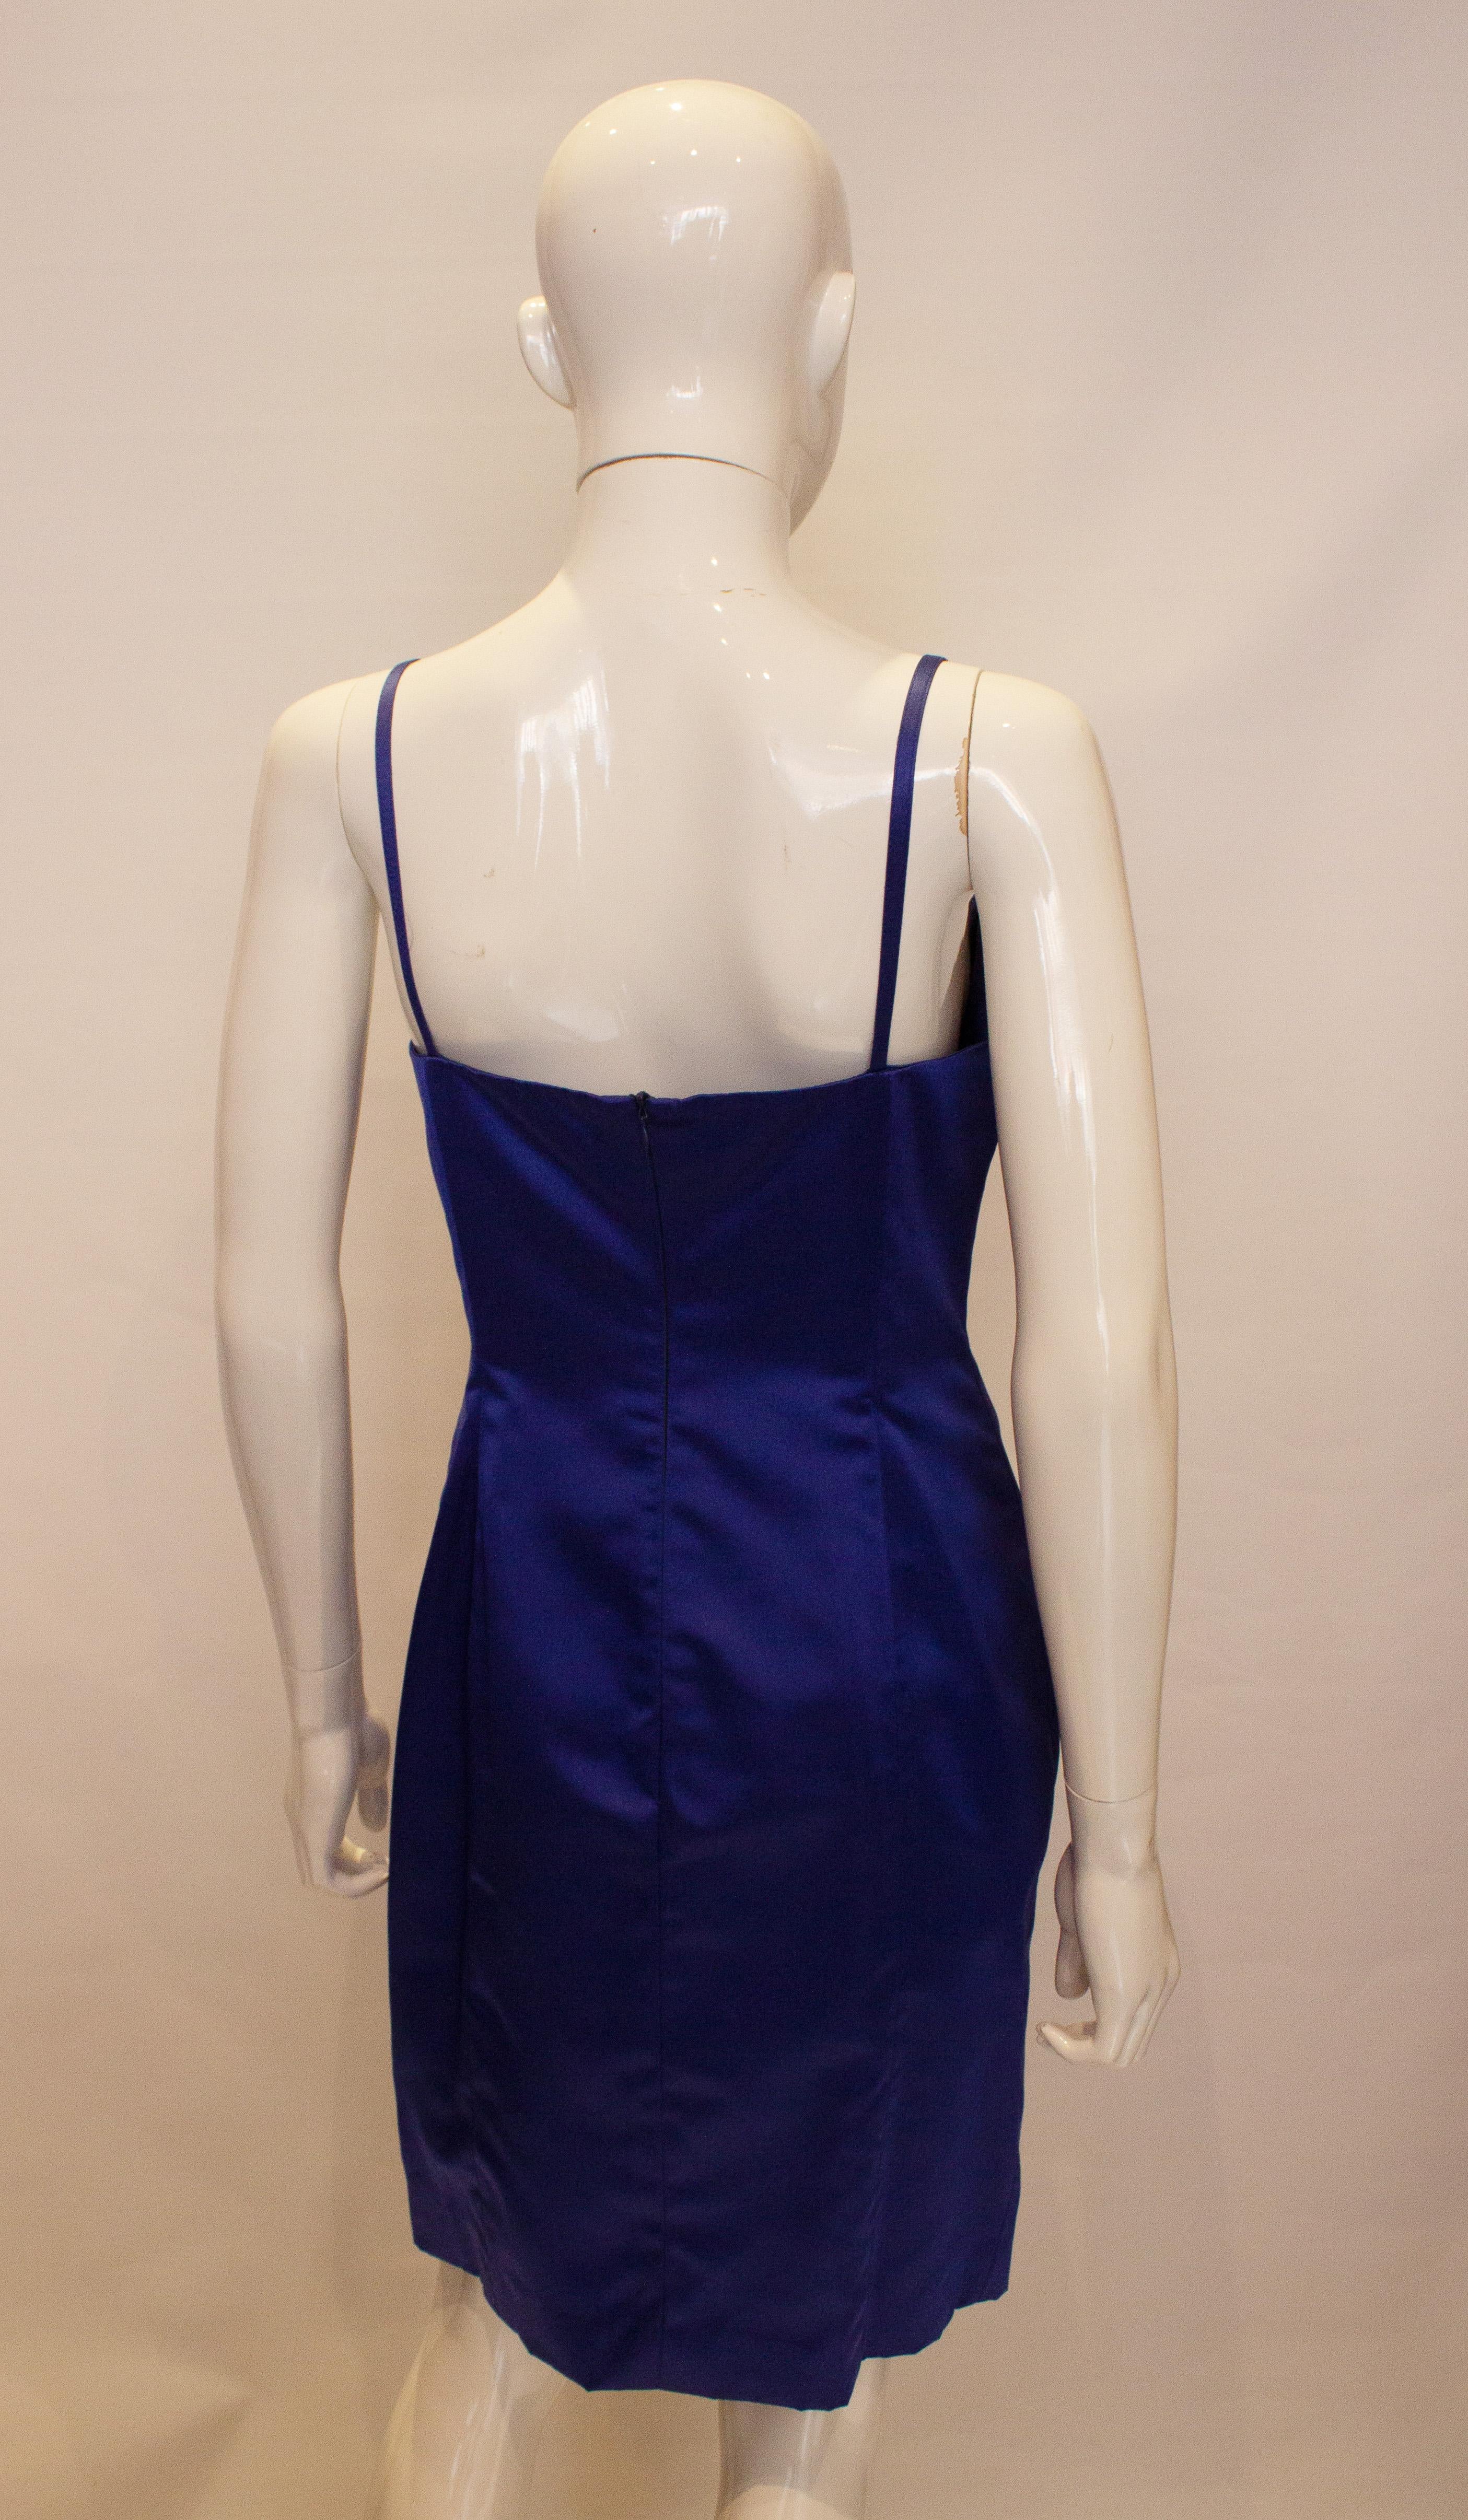 Ein hübsches Vintage-Slipkleid von Yves Saint Laurent, Variation. Das Kleid in einem hübschen Blauton hat einen tiefen Ausschnitt, einen zentralen Reißverschluss am Rücken und ist vollständig gefüttert. 
Maße: Büste 36'', Länge 37'' plus 2'' Saum.